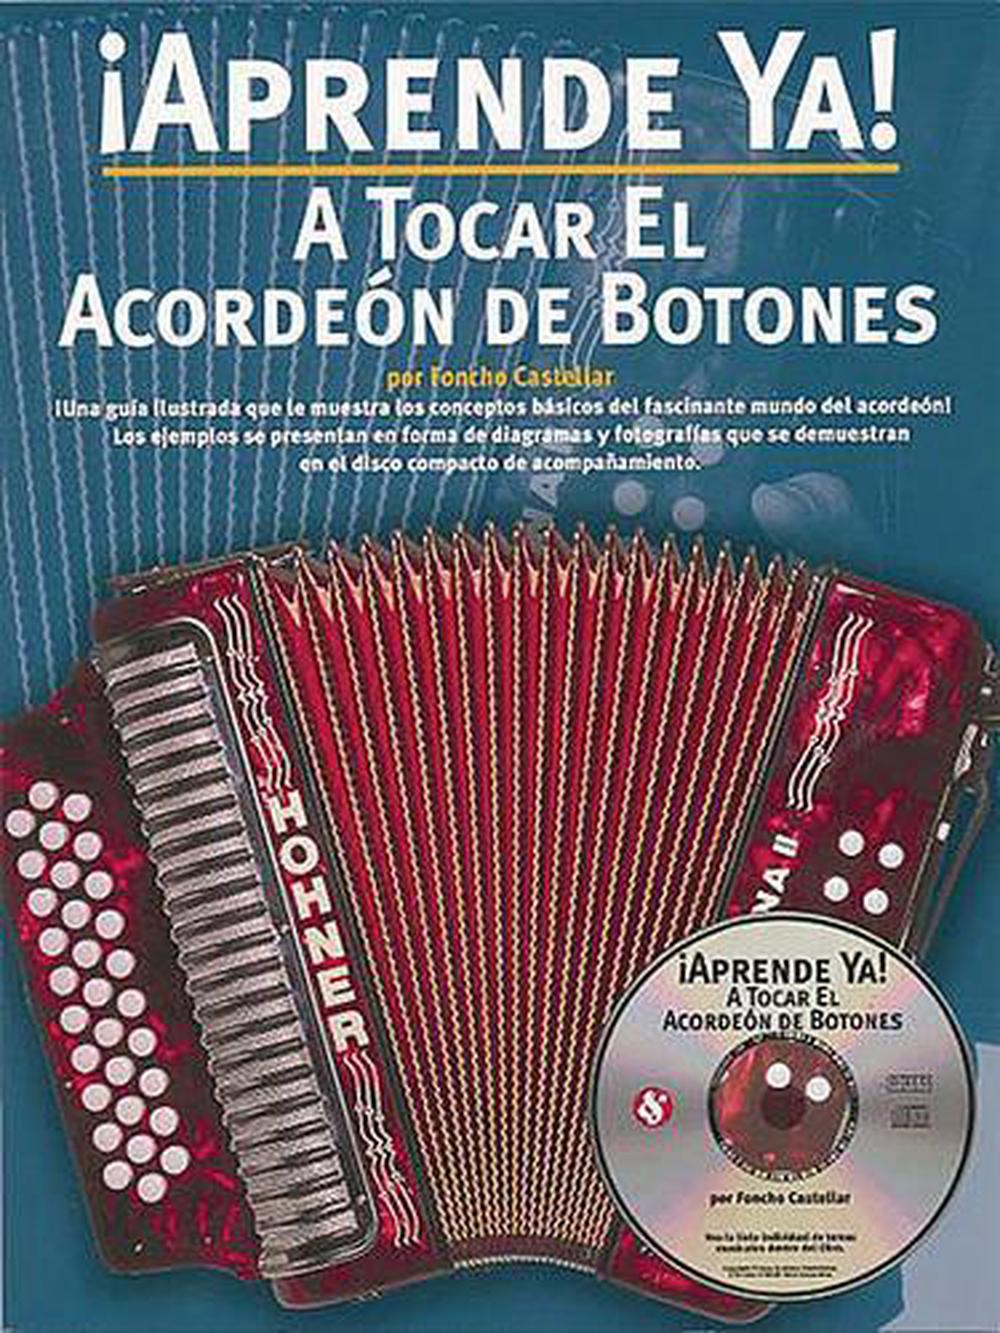 A Tocar el Acordeon de Botones [With CD] by Foncho Castellar (Spanish ...